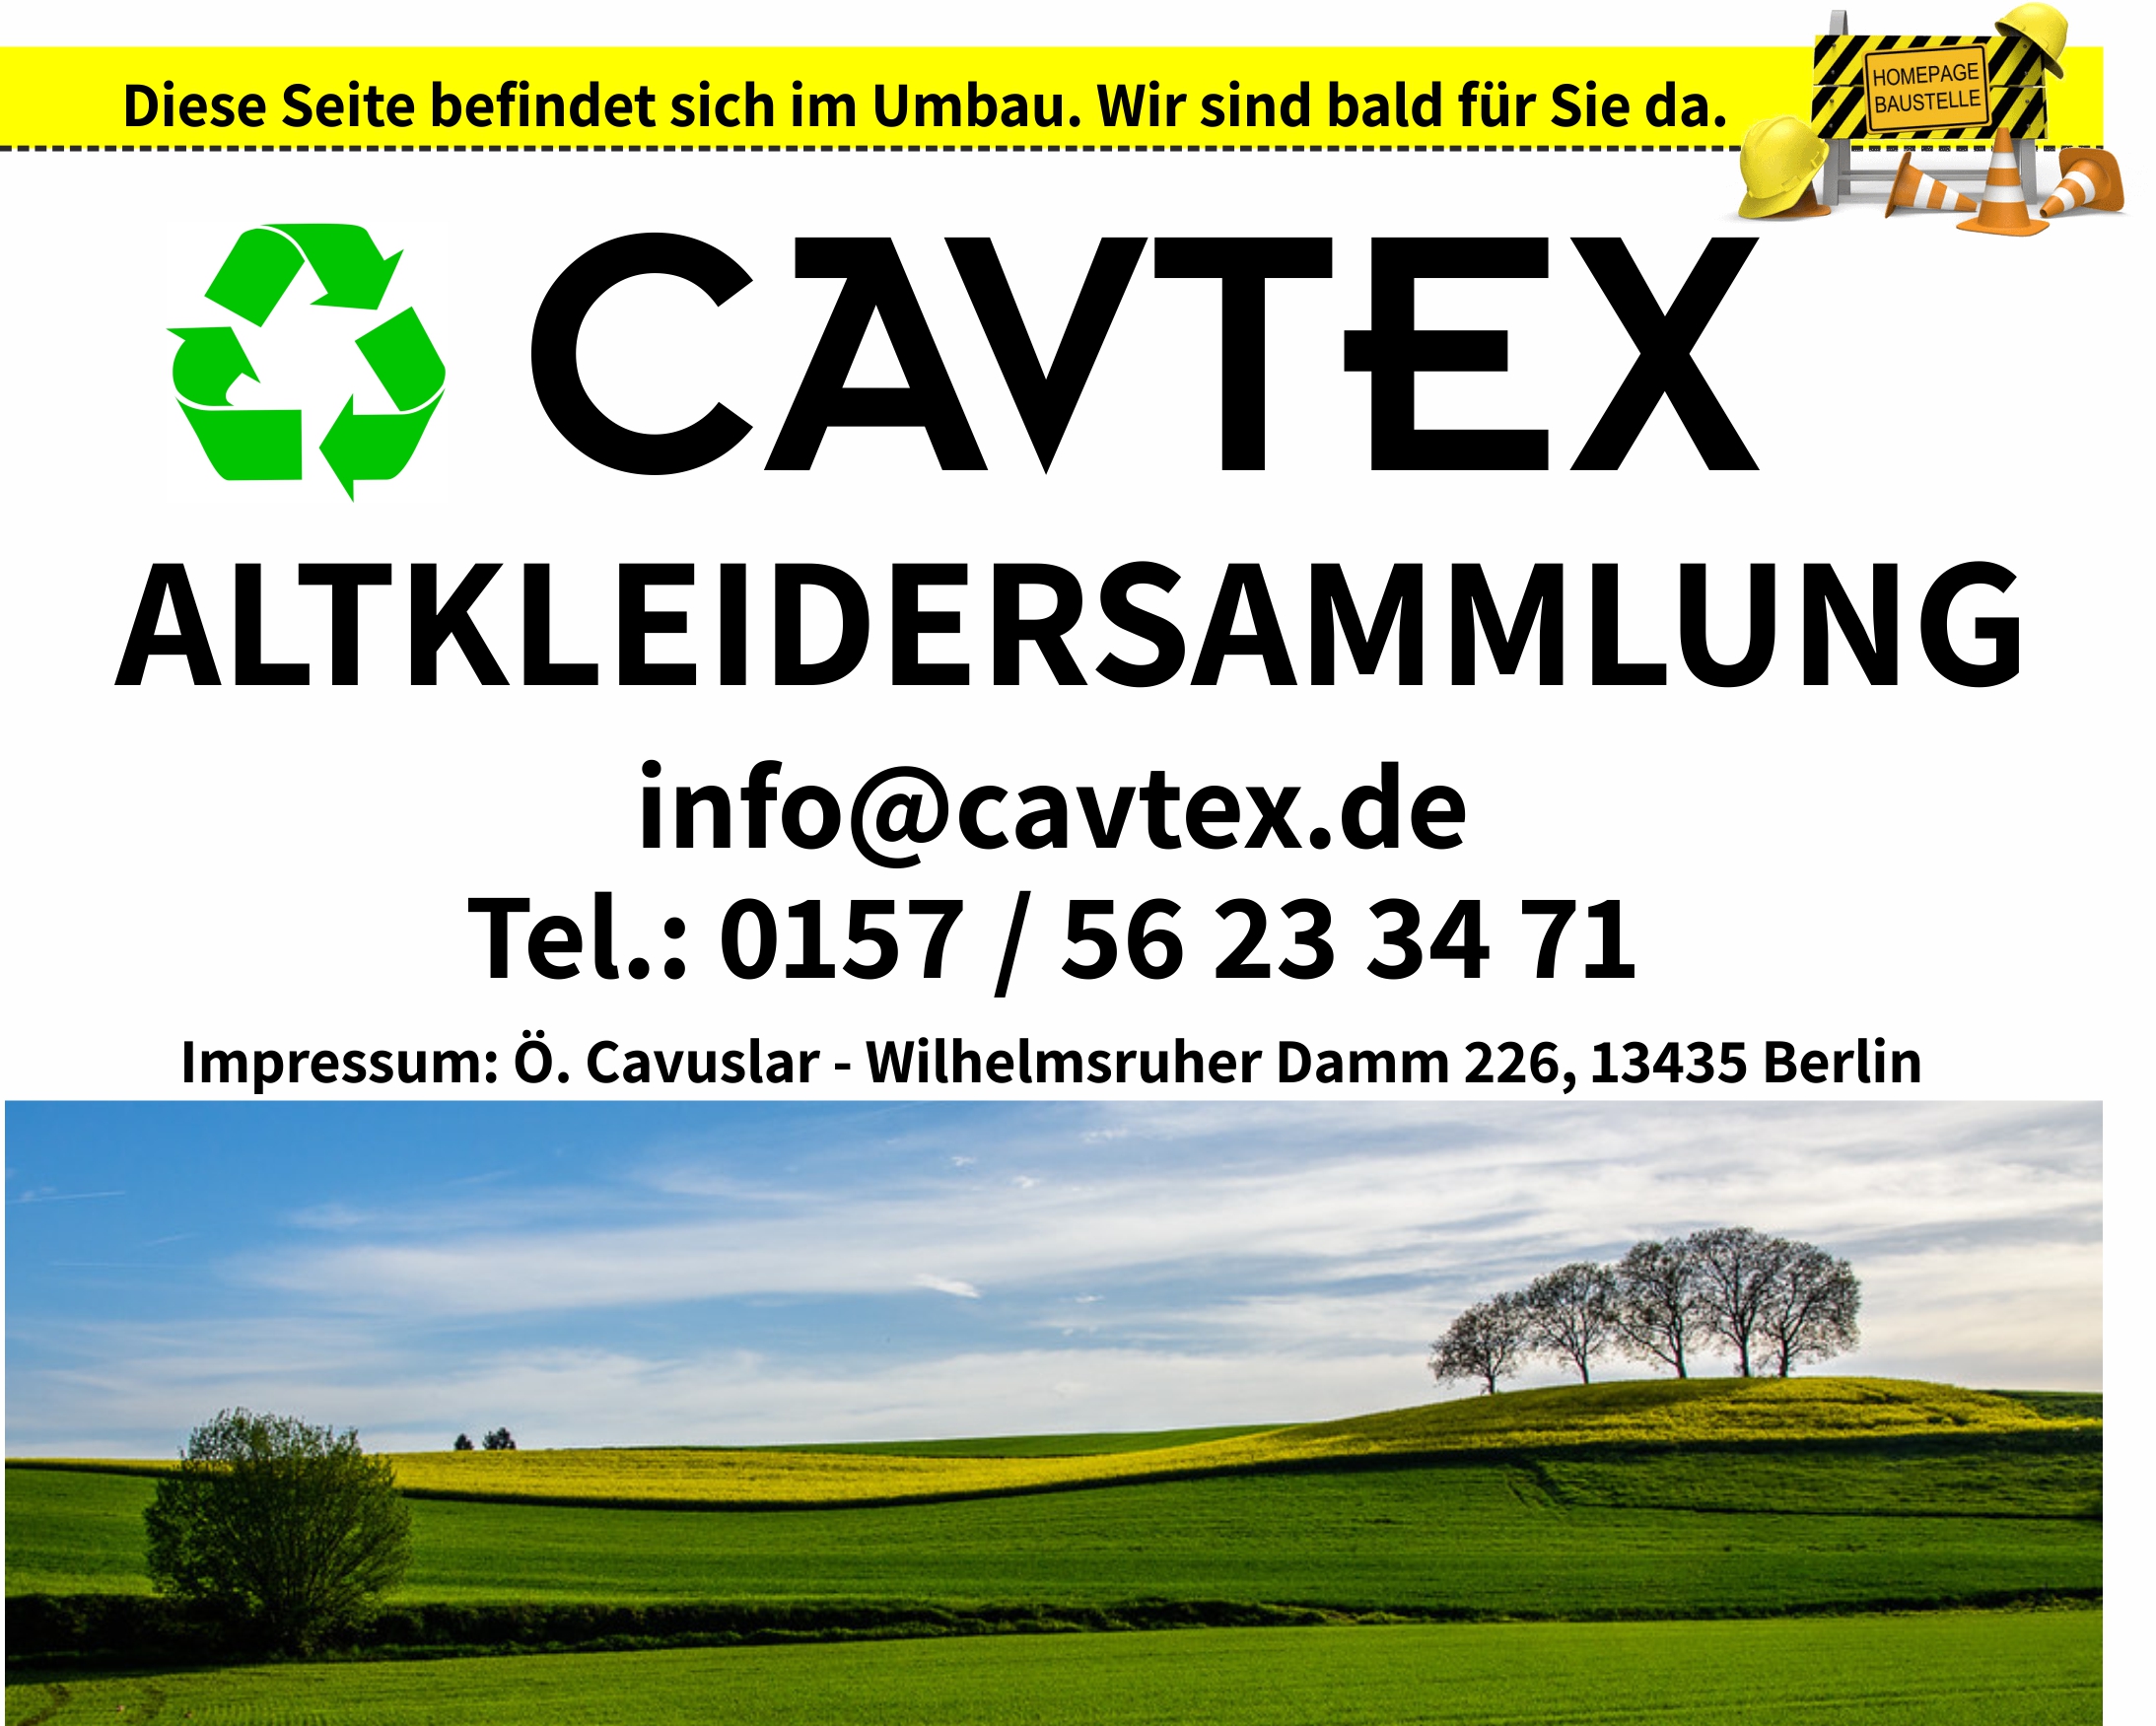 Caxtex